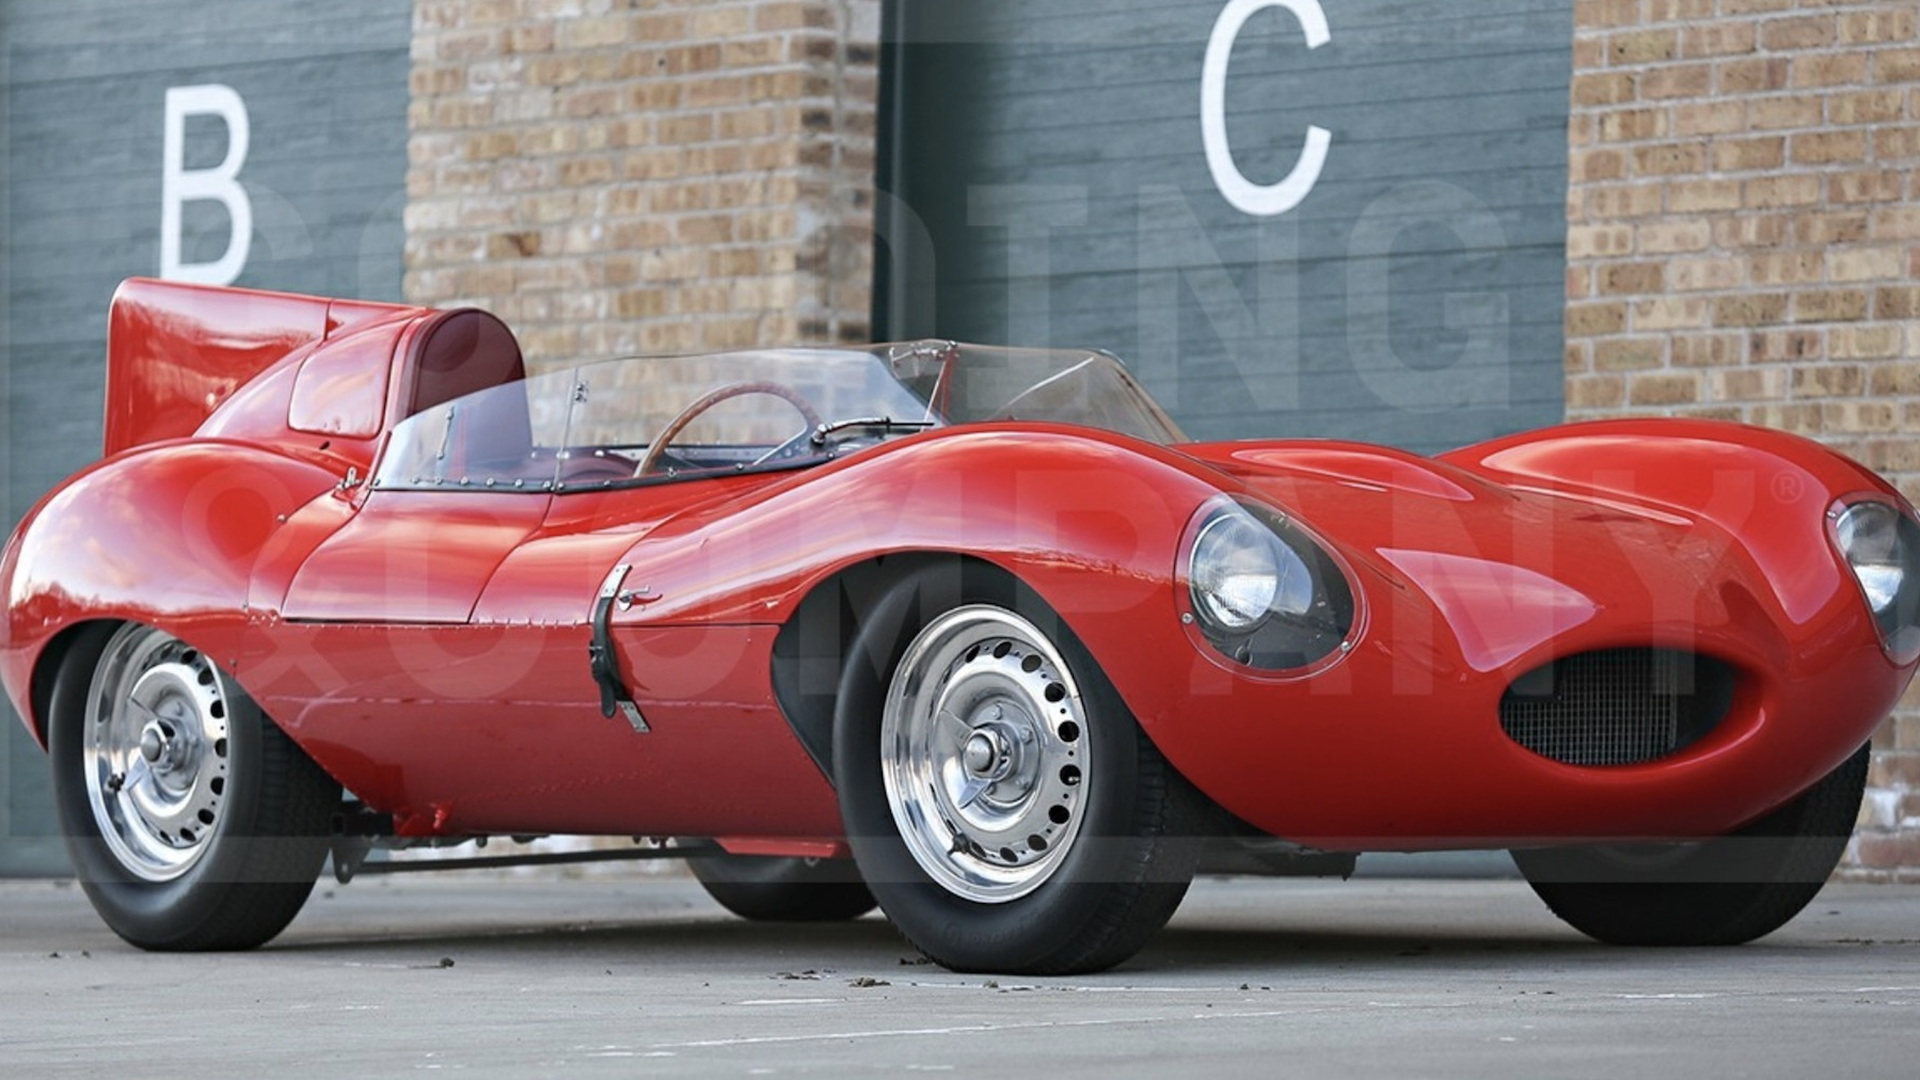 1956 Jaguar D-Type sold by Bernie Ecclestone